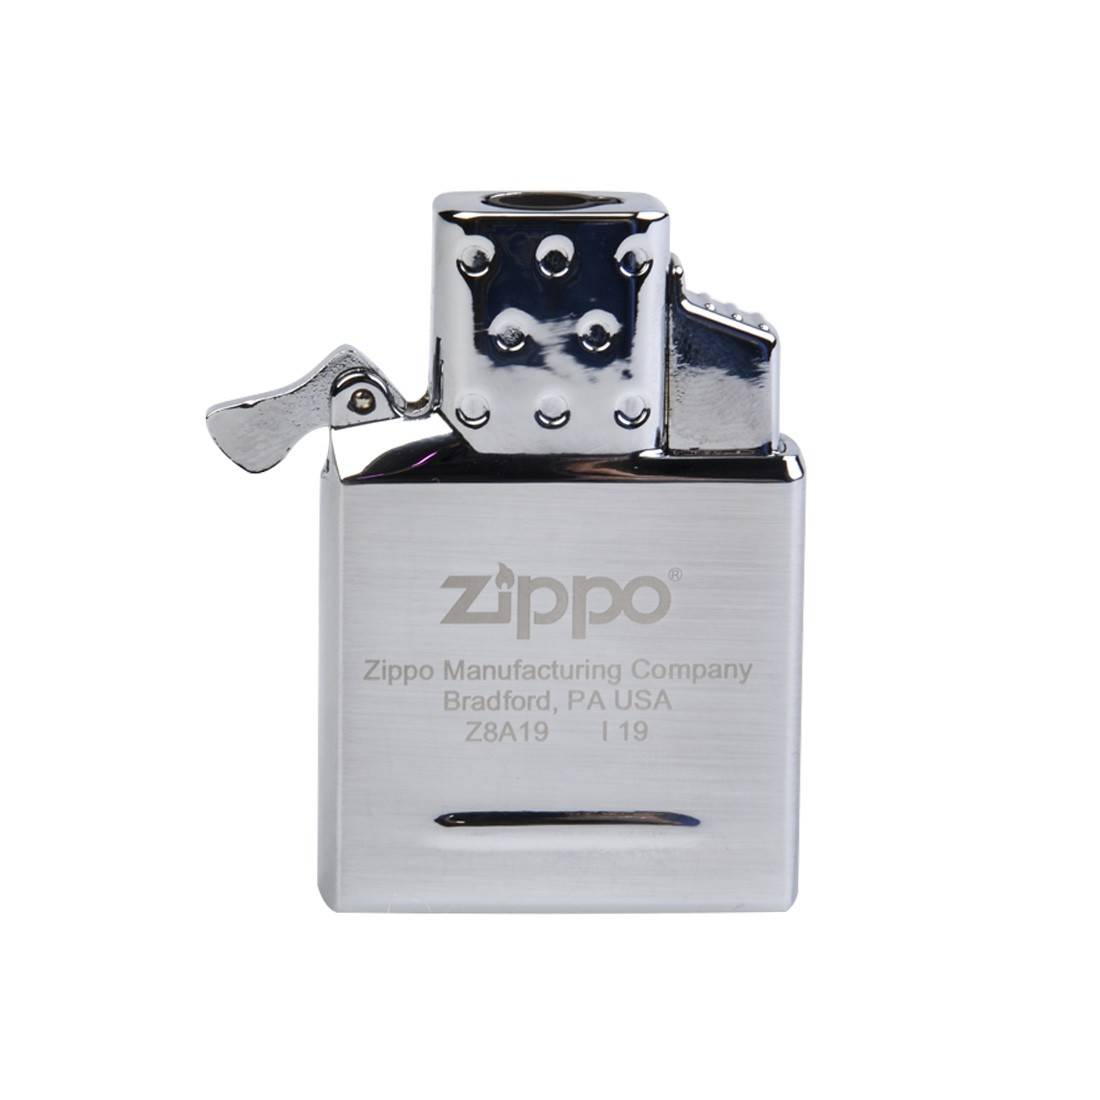 Kit d'accessoires Zippo 8 : 1 briquet à essence Zippo, 1 pierre à